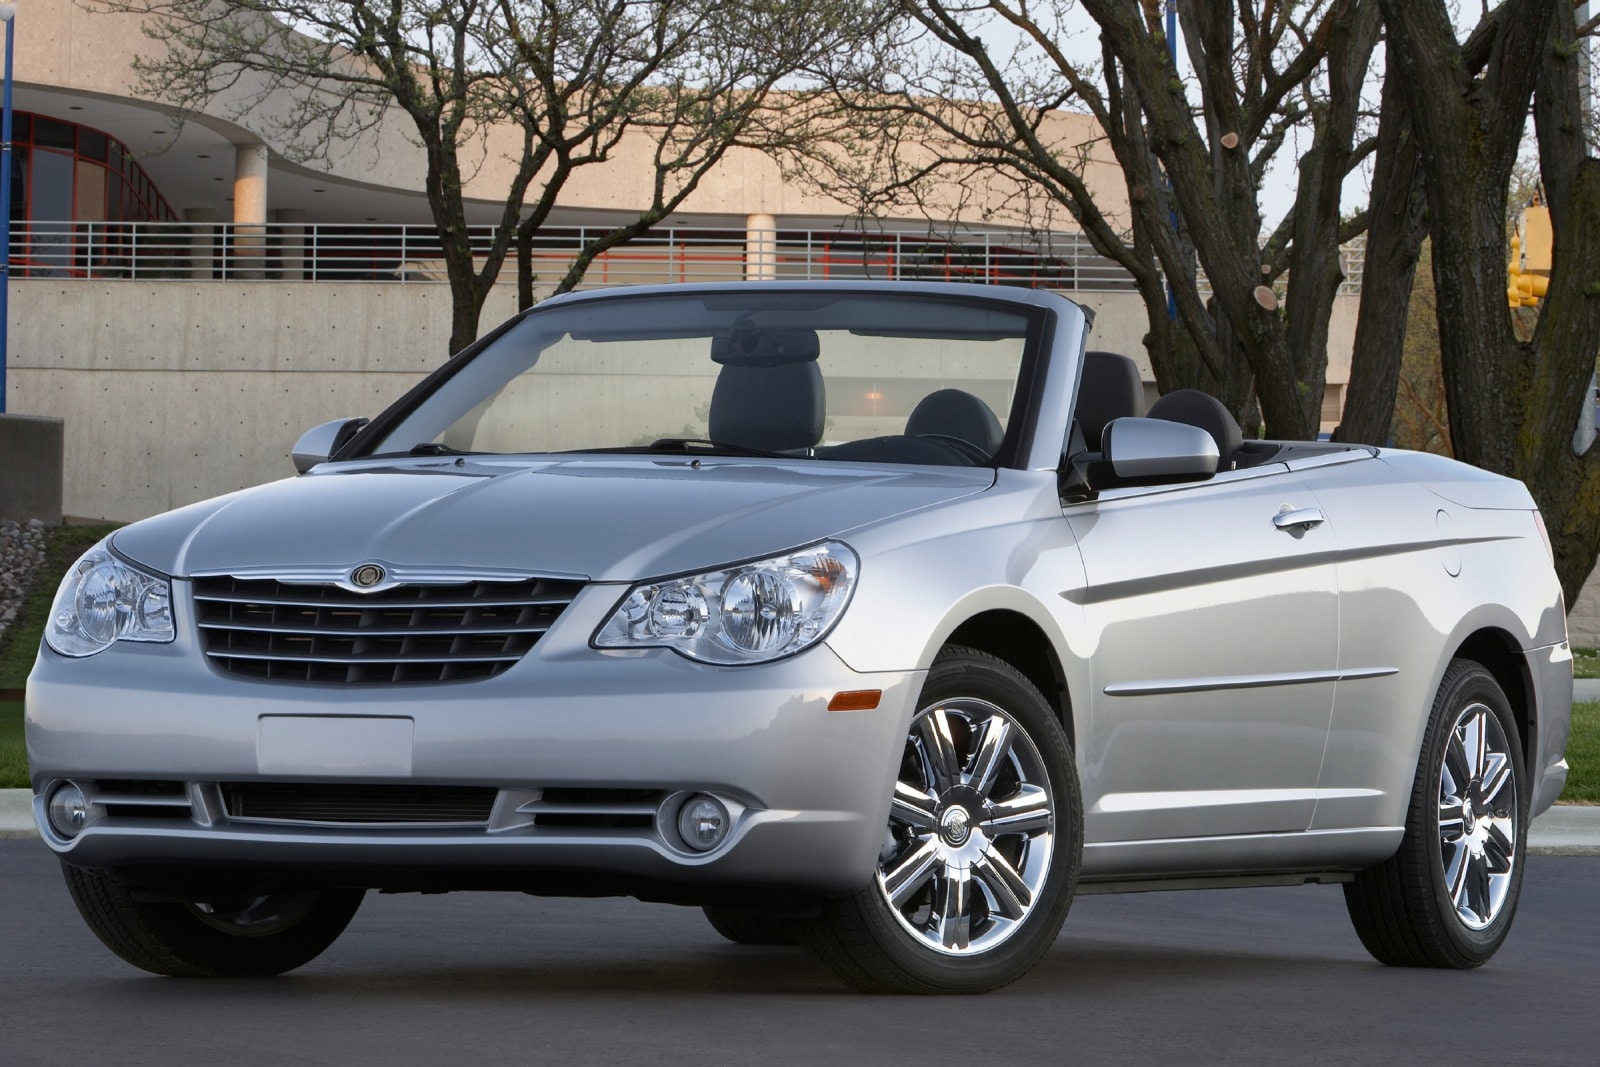 2010 Chrysler Sebring Review & Ratings | Edmunds